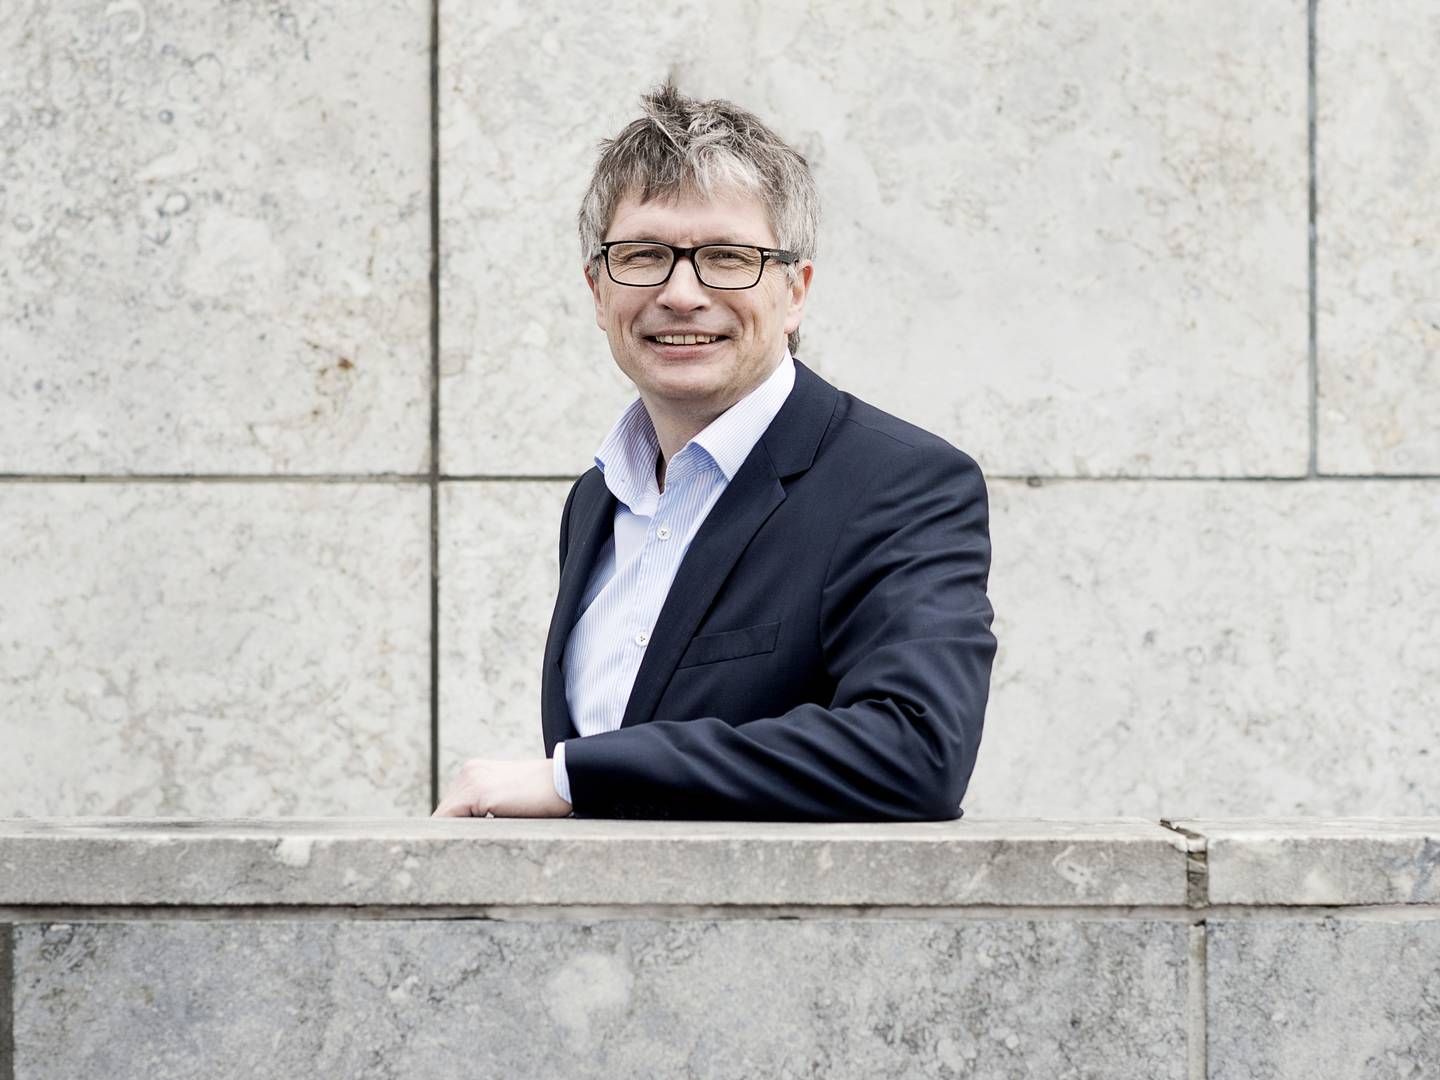 Morten Østrup Møller stoppede i 2020 som juridisk direktør i Ejendomdanmark for at blive chef for asset management hos pensionsselskabet P+. | Foto: Camilla Rønde